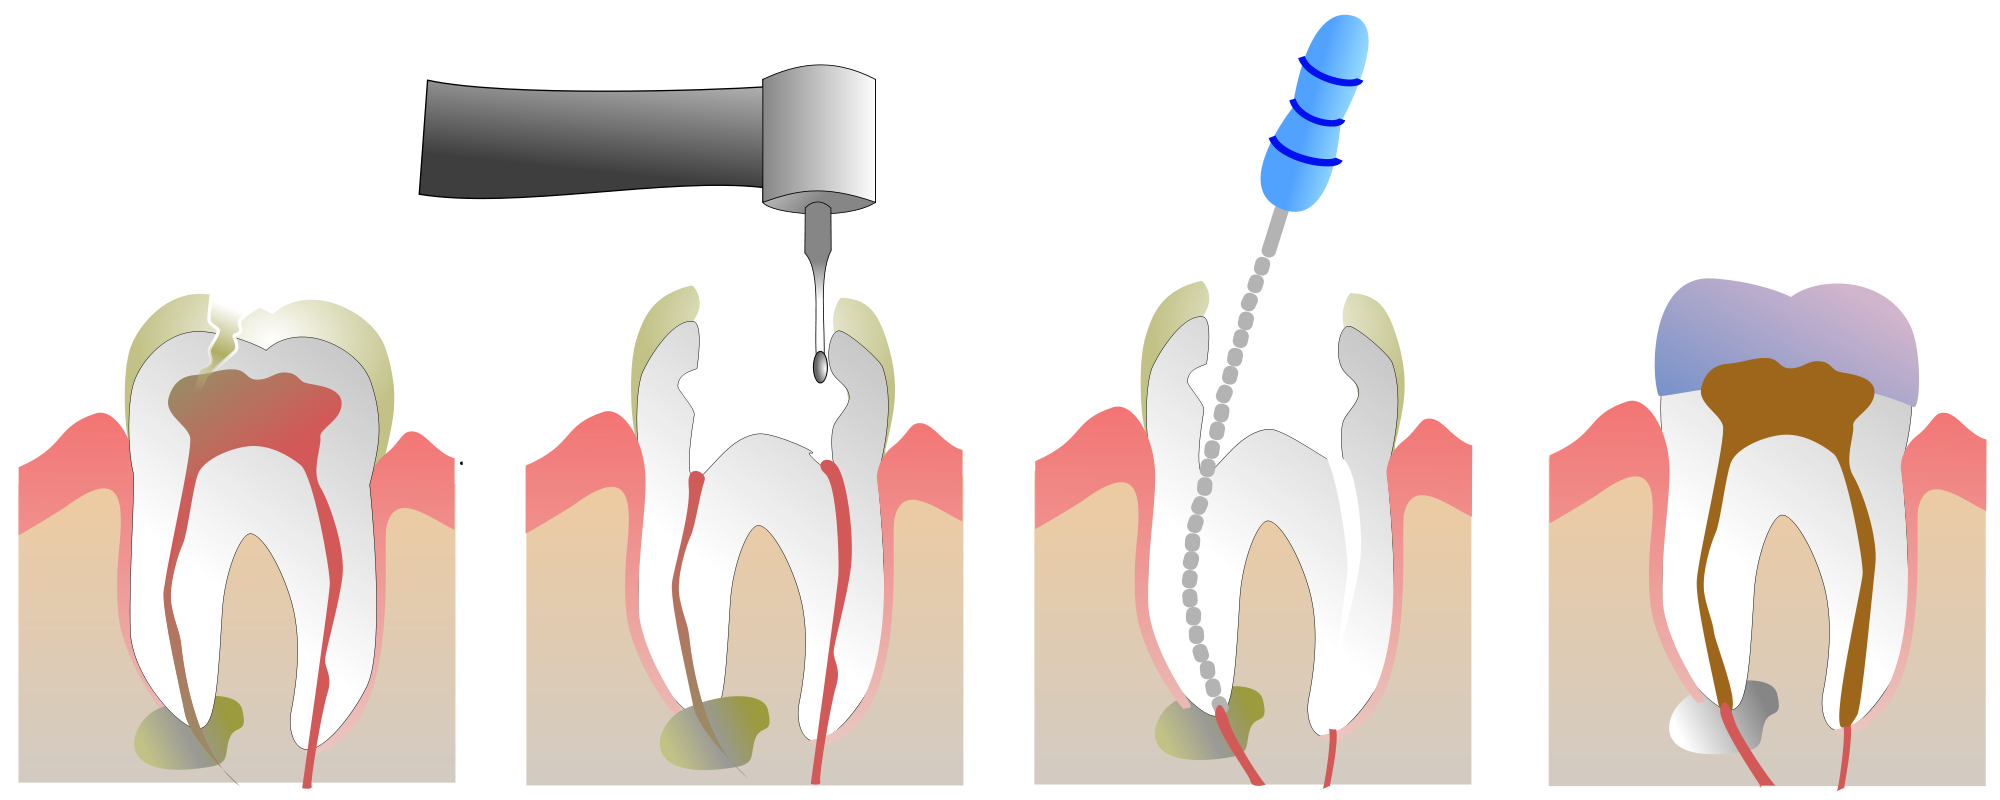 4 Канальный пульпит зуба. Пульпит 2 канального зуба. Периодонтит 1 канальный. Обработка и пломбирование корневых каналов